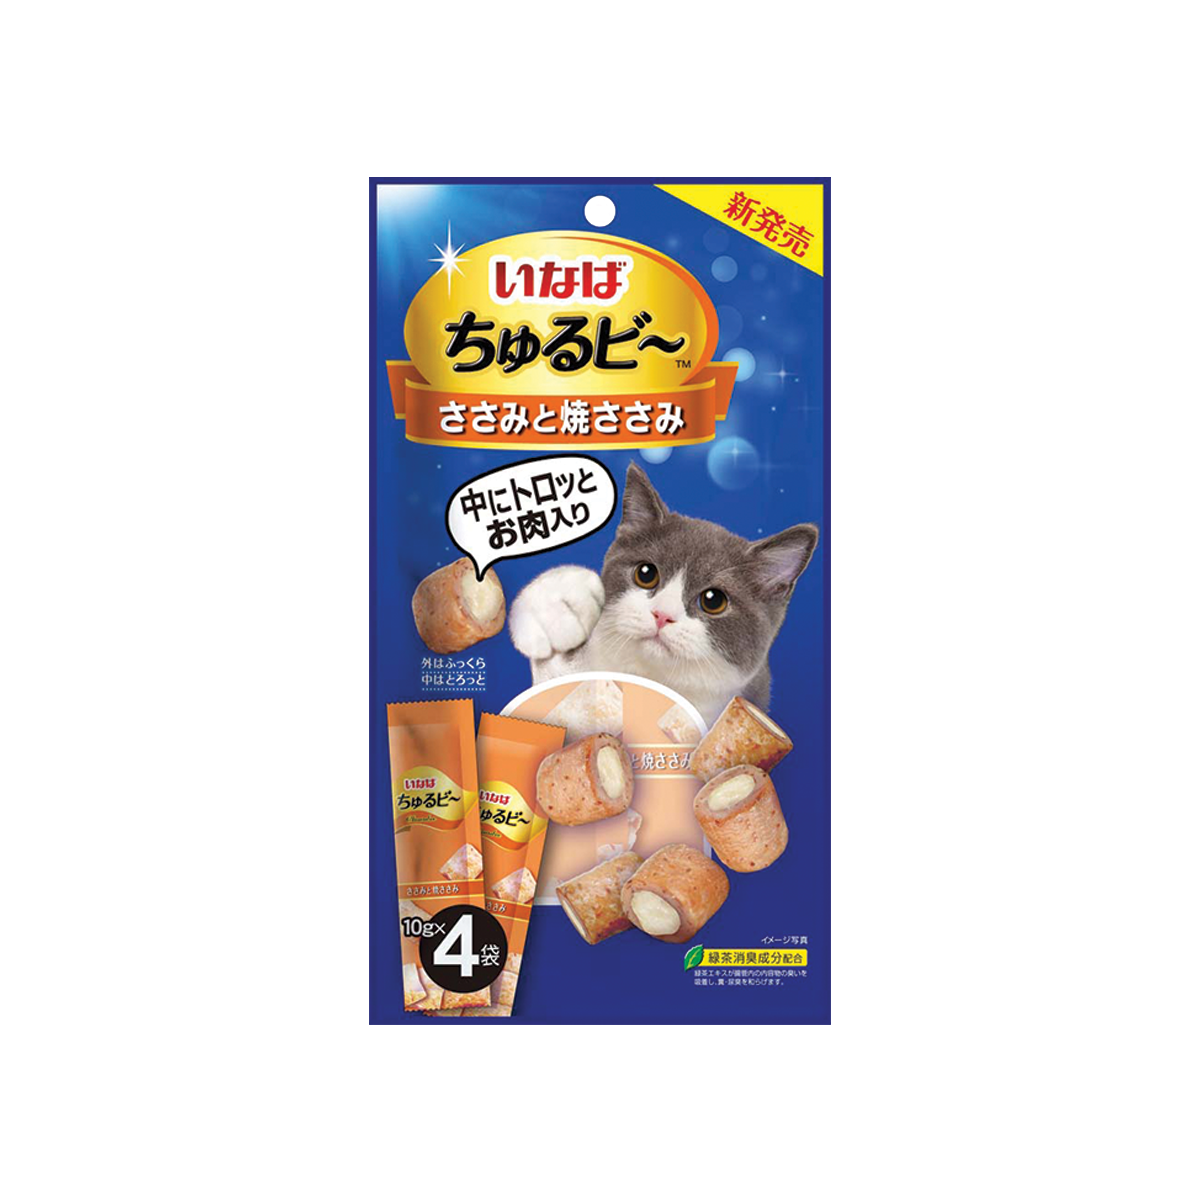 CIAO Churubee Creamy Cat Treats Tuna Grilled Chicken Flavor เชาว์ ชูหรุบี ขนมแมวชิ้นสอดไส้ครีมแมวเลีย สูตรไก่ ขนาด 40 กรัม